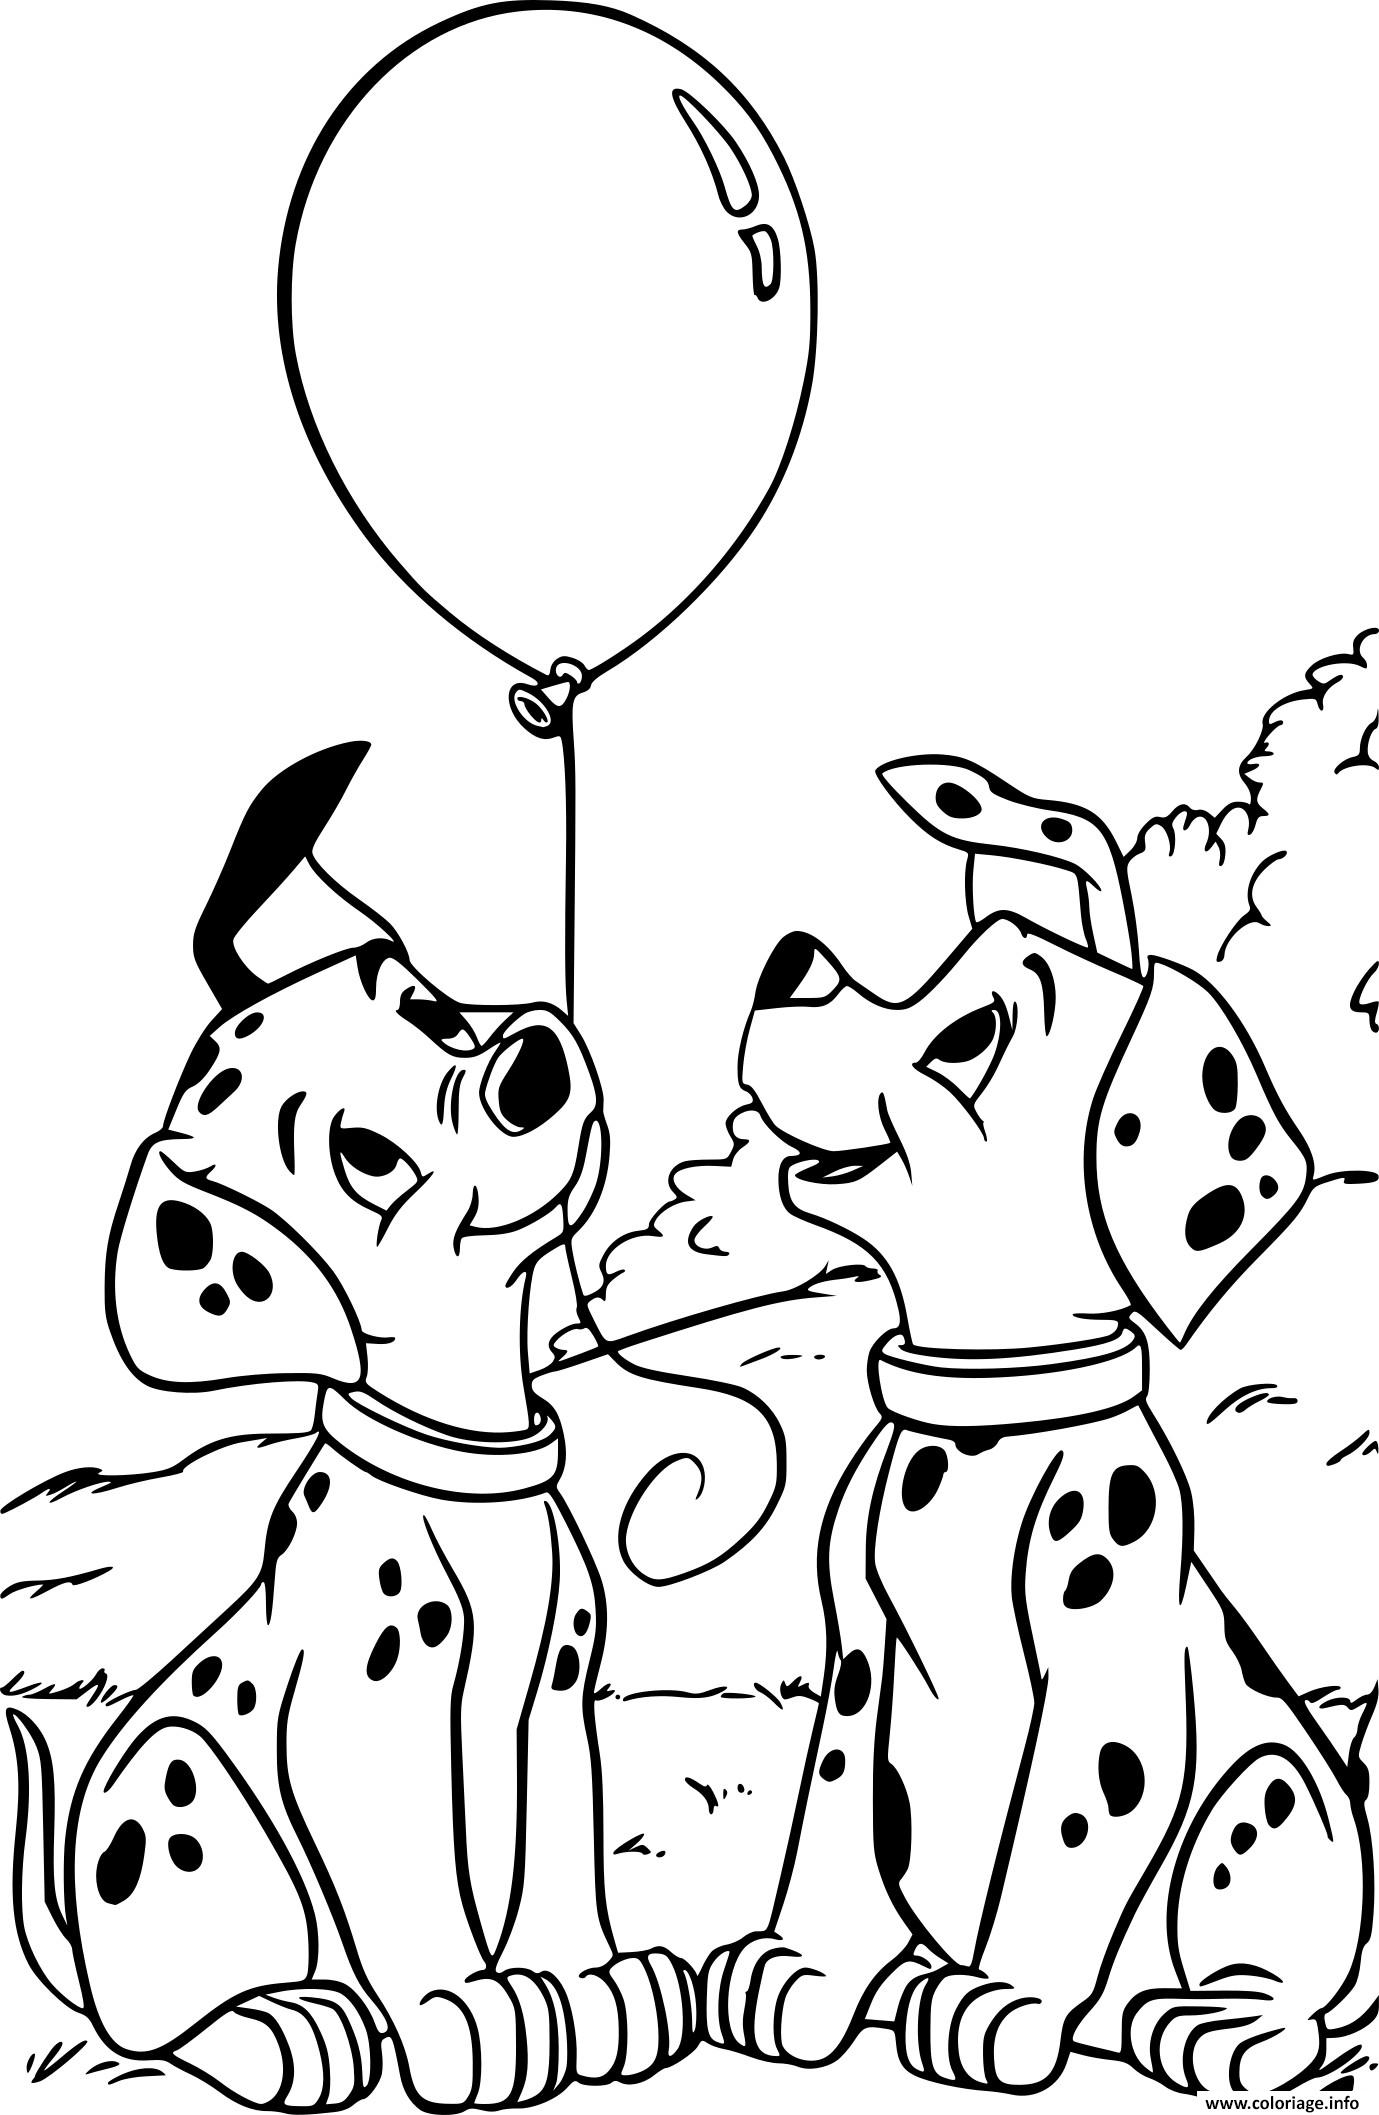 Coloriage Les 101 Dalmatiens Pongo Et Perdita Dessin Disney Walt À Imprimer serapportantà Coloriage E 